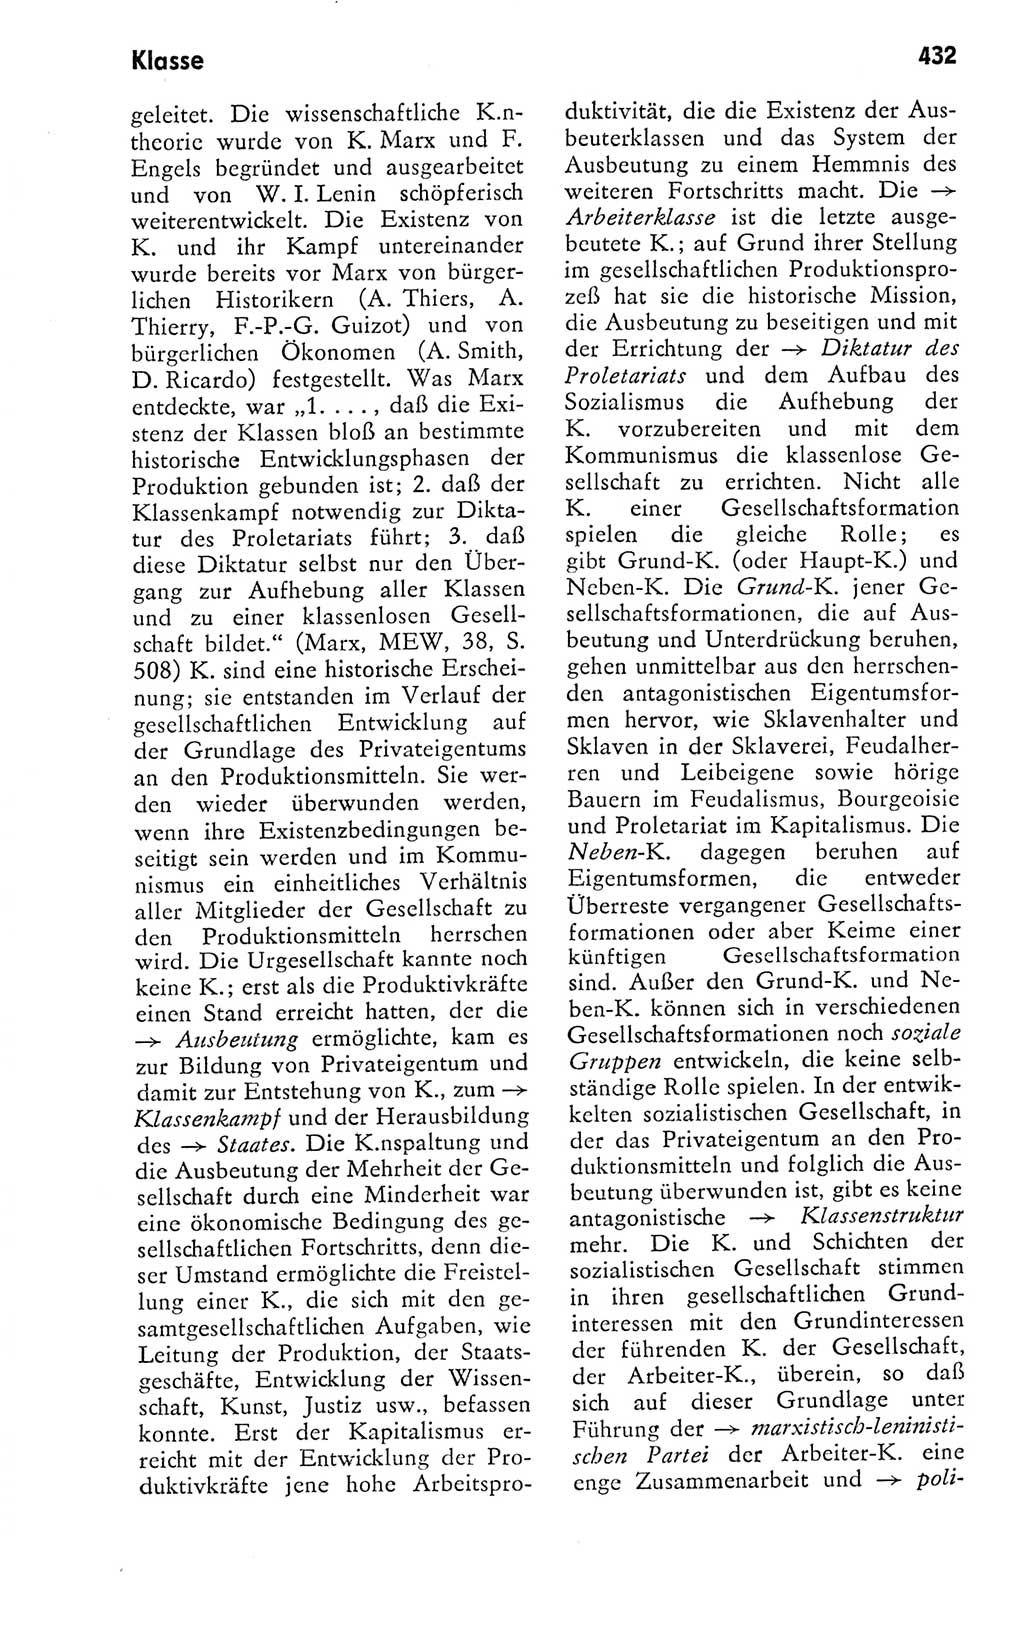 Kleines politisches Wörterbuch [Deutsche Demokratische Republik (DDR)] 1978, Seite 432 (Kl. pol. Wb. DDR 1978, S. 432)